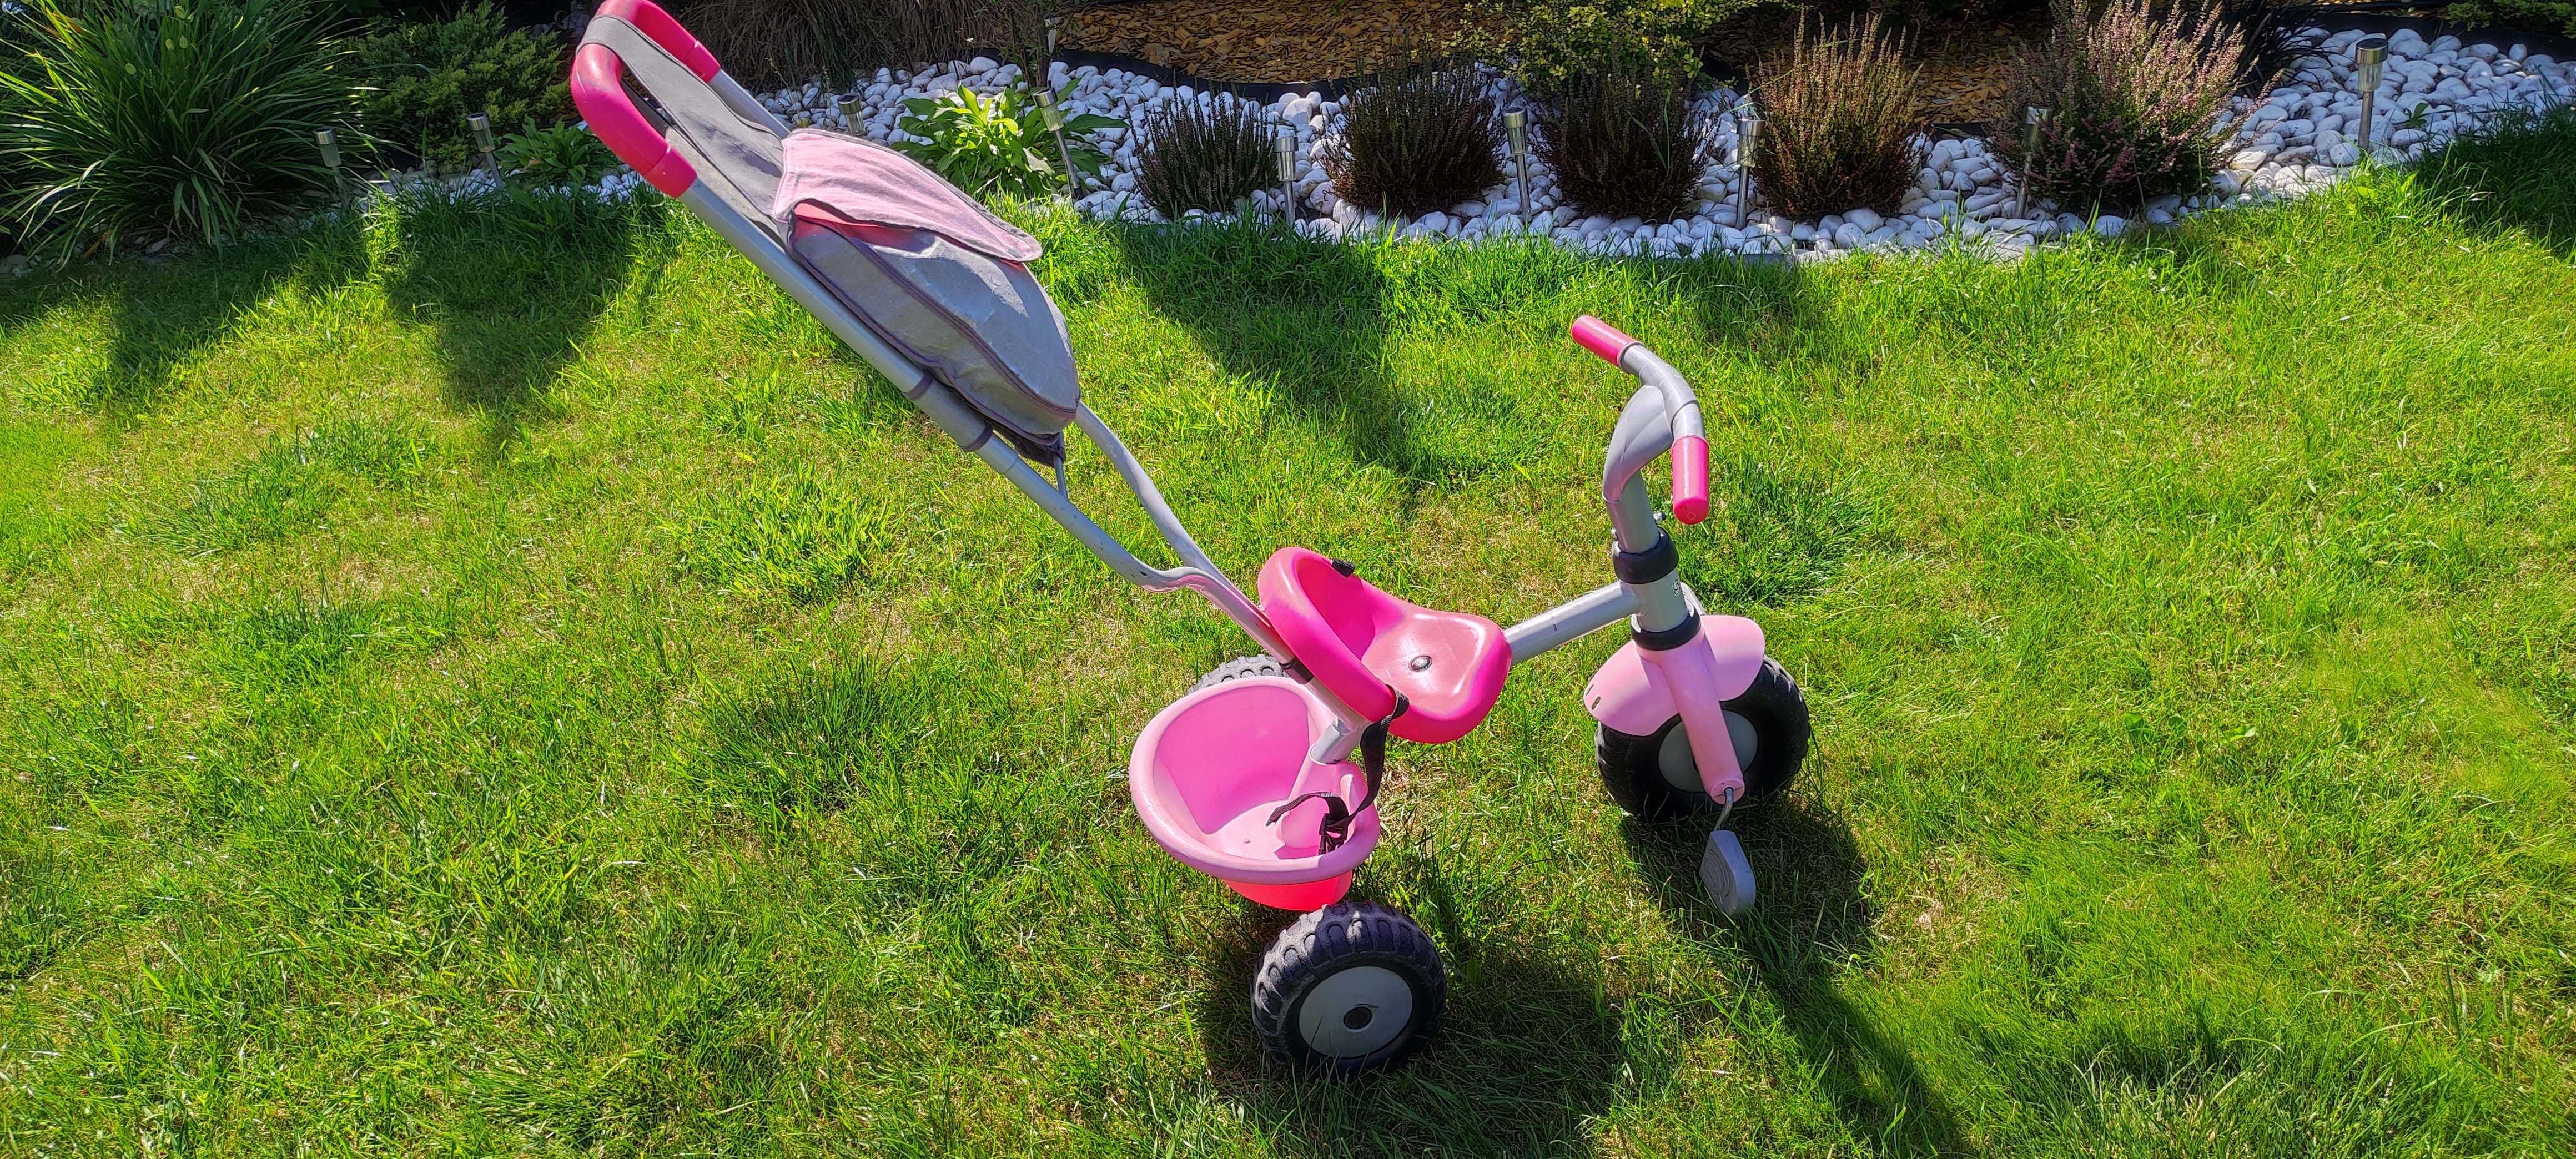 Rowerek dziecięcy trójkołowy SMOBY różowy obręcz pasy torba drążek